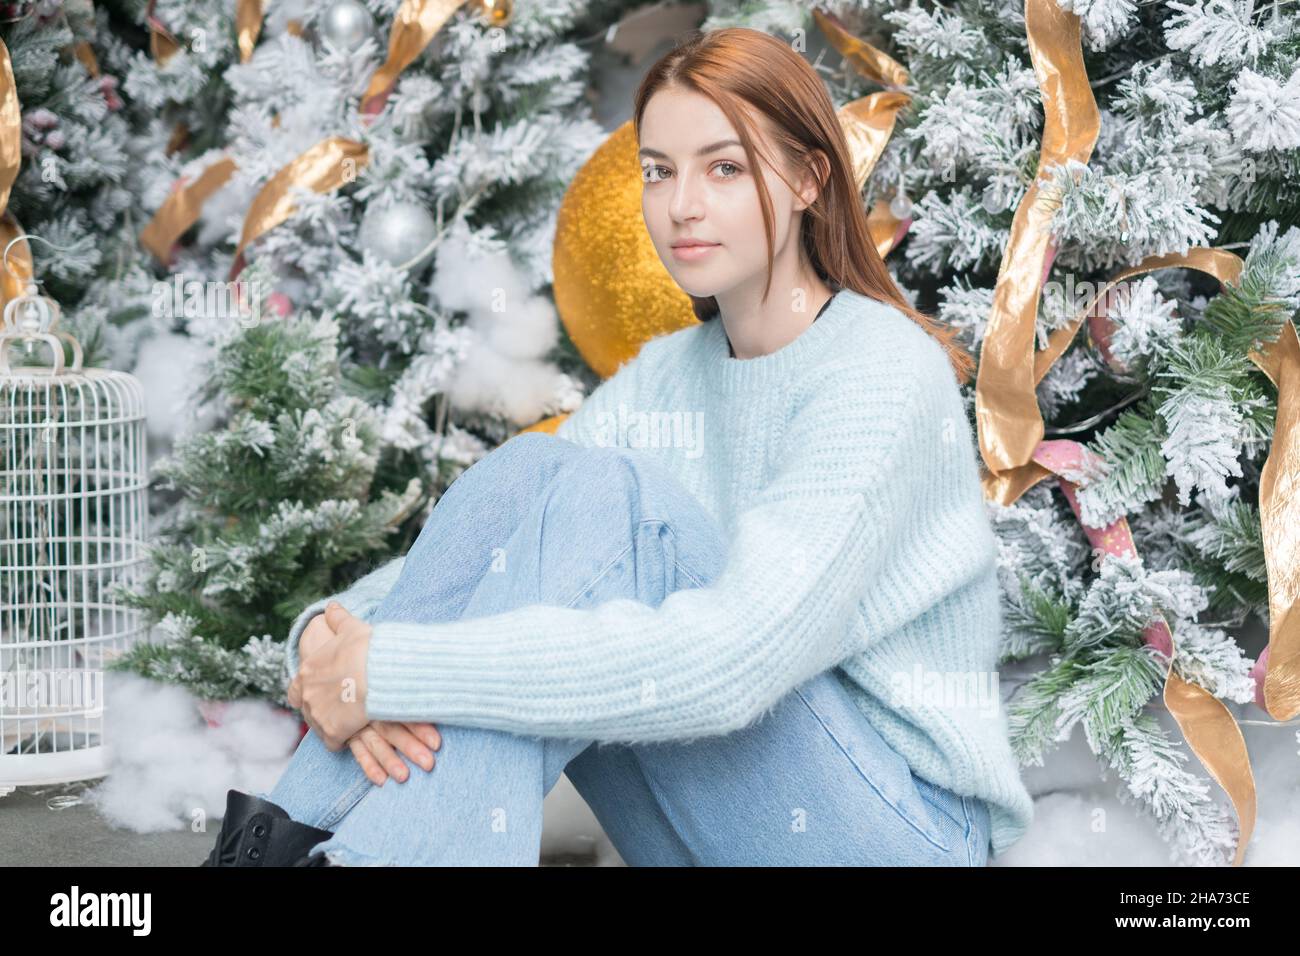 Neujahrs-Porträt der schönen kaukasischen jungen Frau in kuscheligen Wolle warm hellblau Pullover. Weihnachtsbaum im Hintergrund. Weihnachts-Shooting Stockfoto